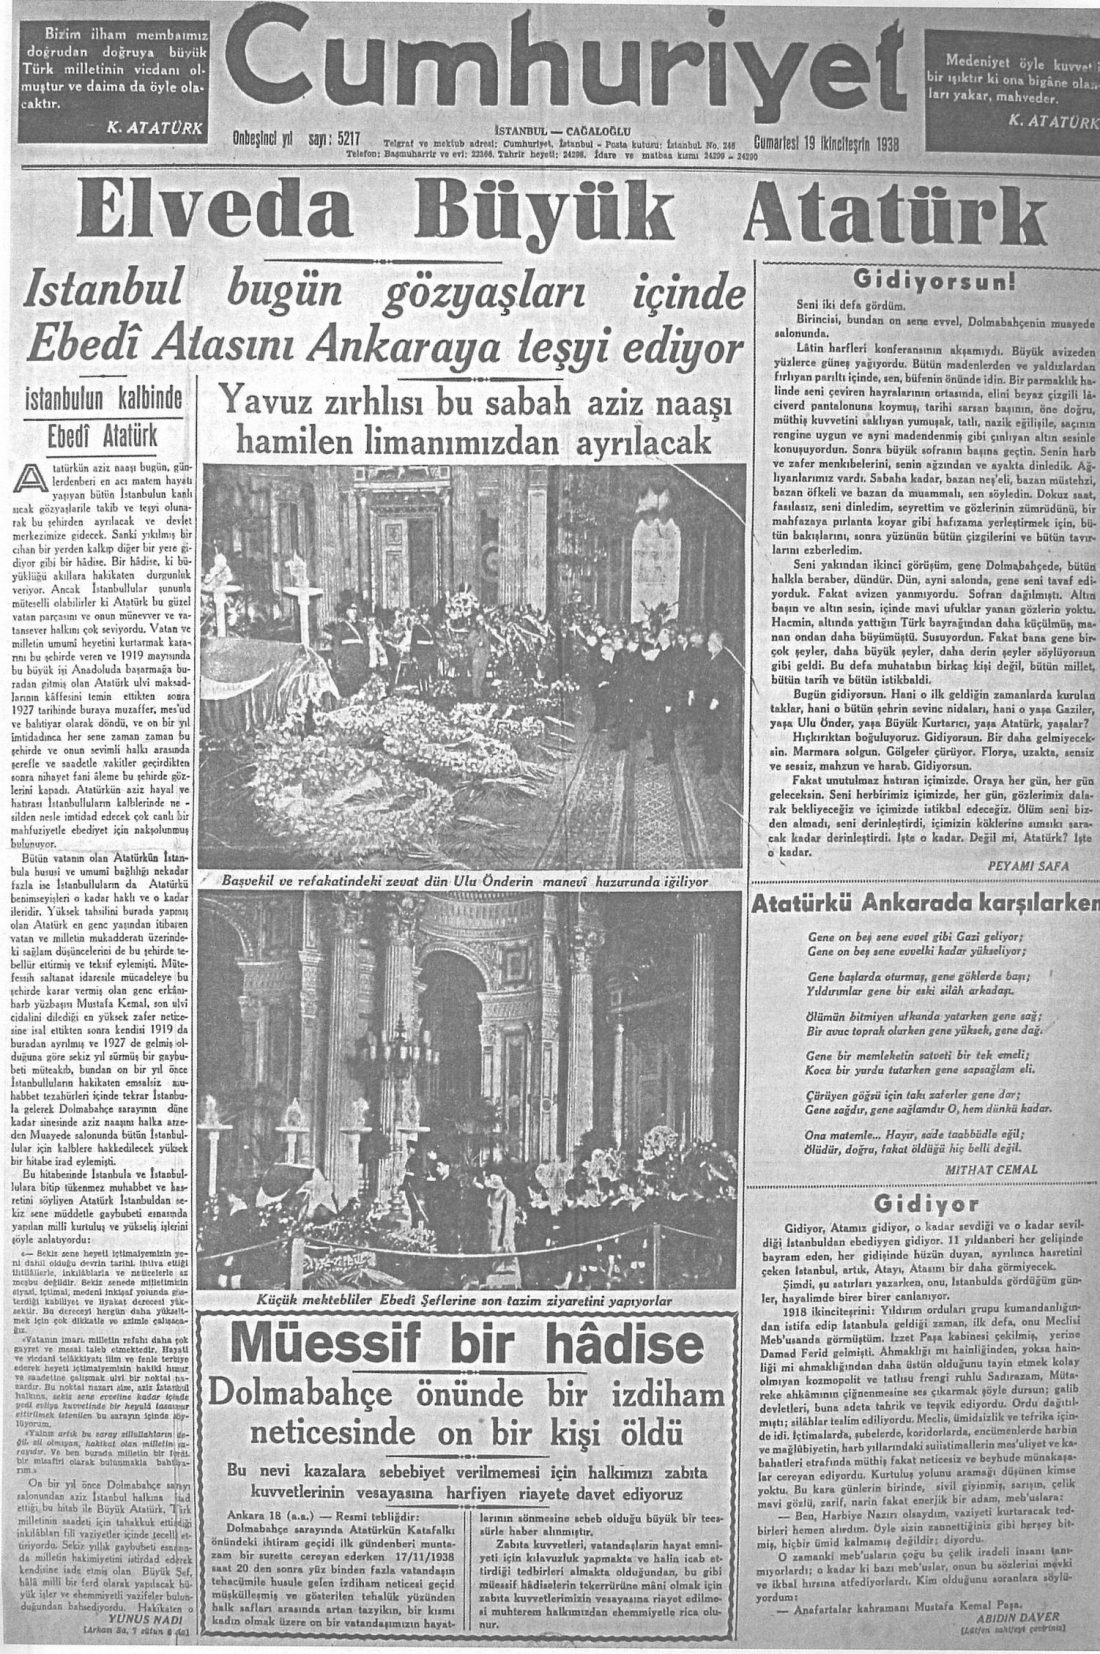 Elveda Büyük Atatürk - Cumhuriyet Gazetesi 1938